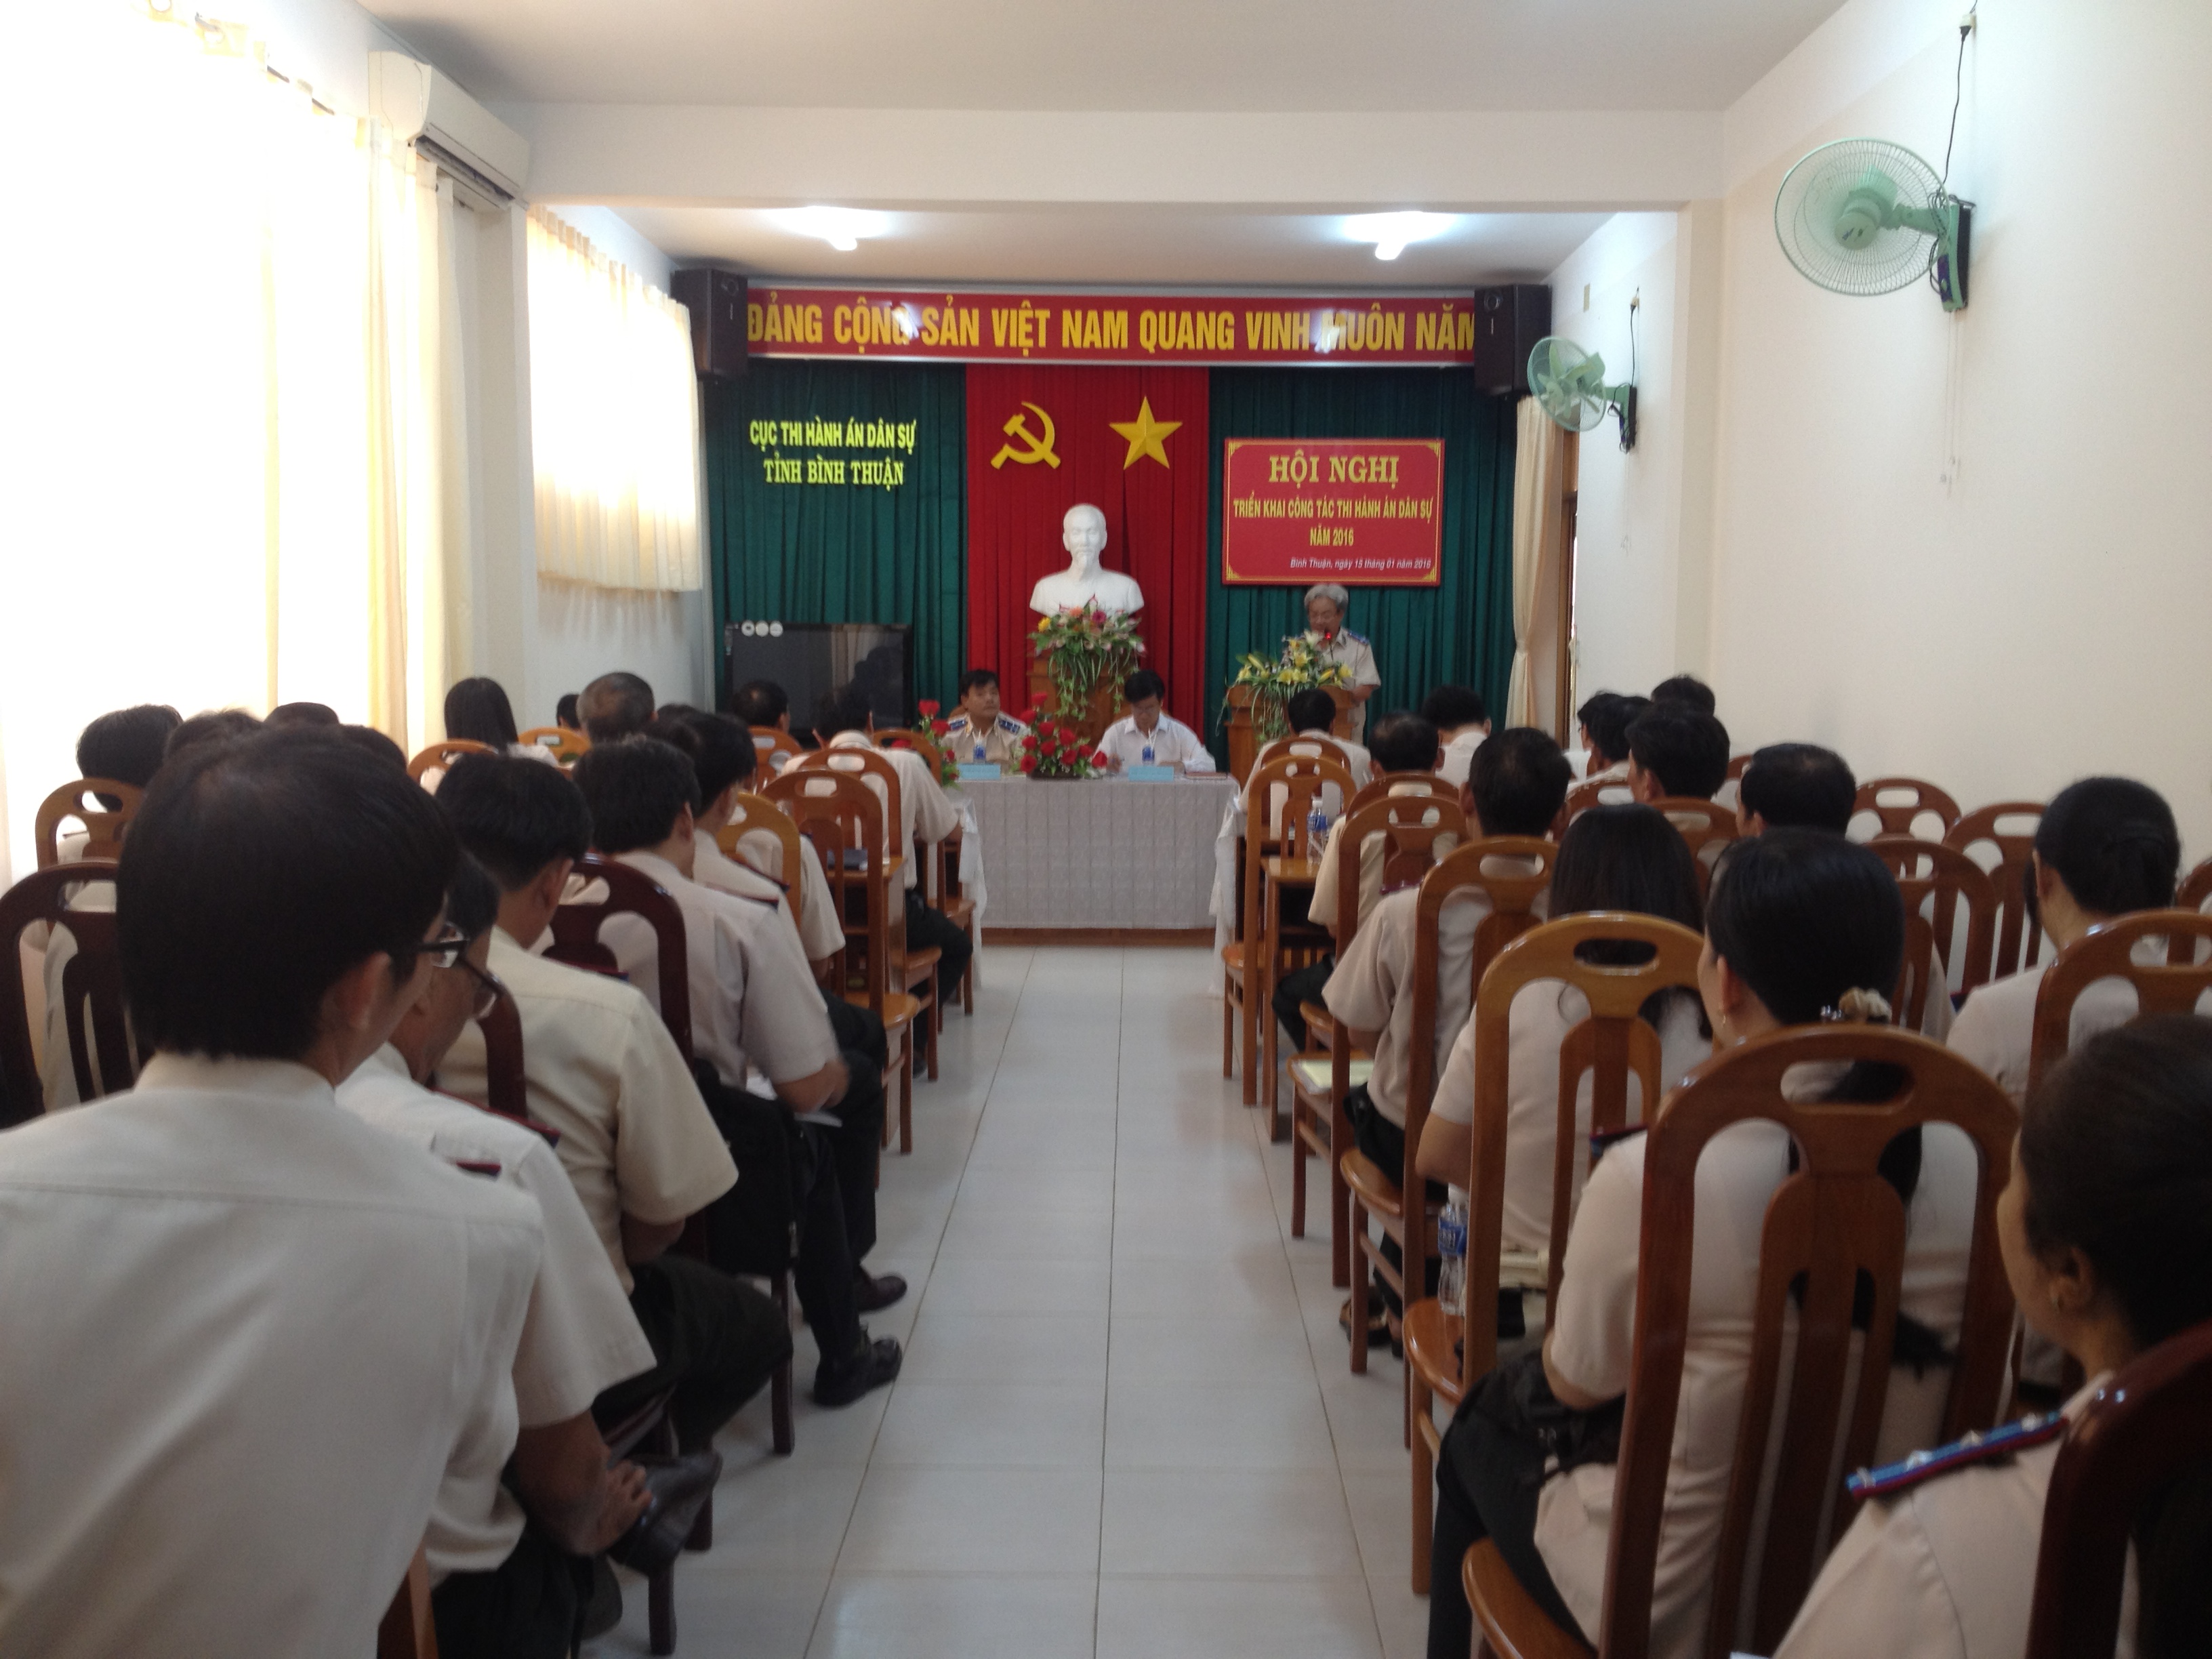 Hội nghị triển khai công tác thi hành án dân sự năm 2016 của Cục Thi hành án dân sự Bình Thuận